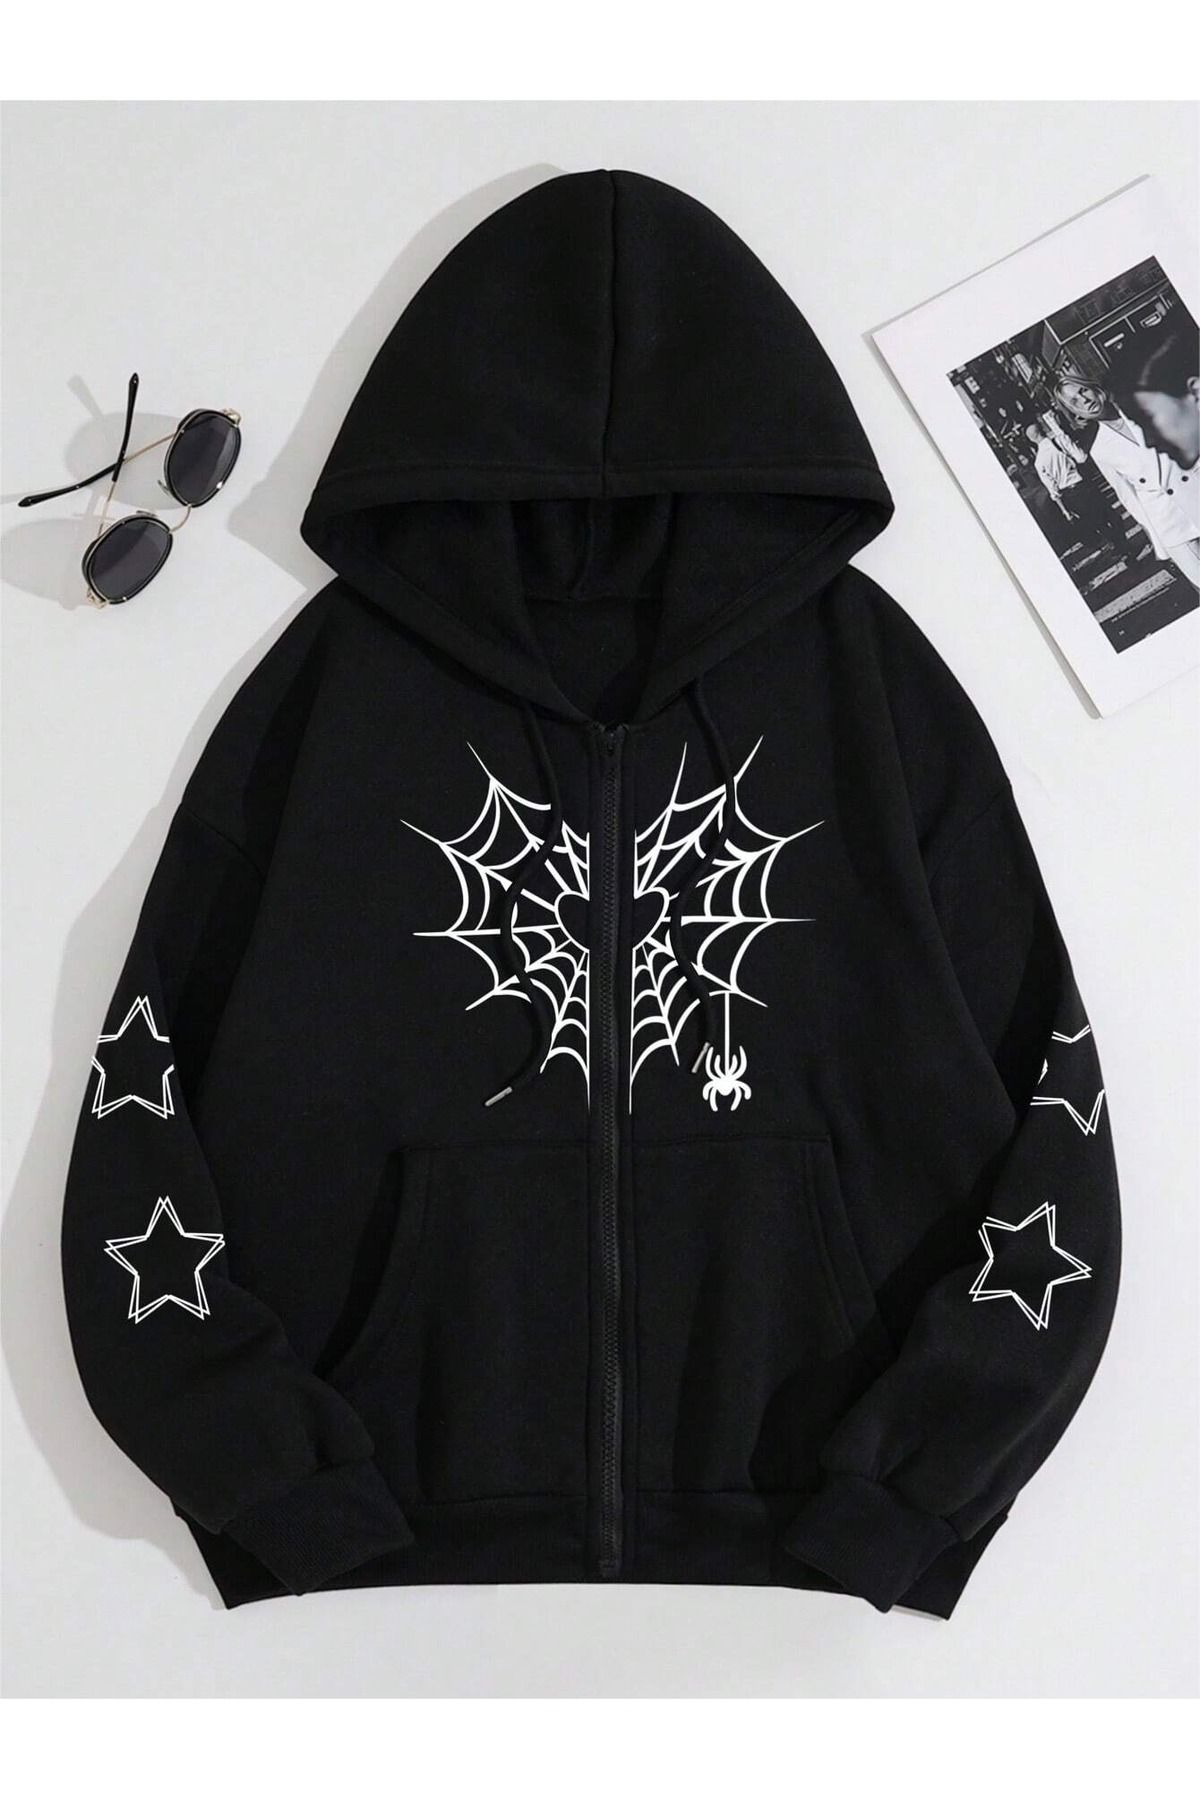 Josette Yıldız Örümcek Ağ Sweatshirt Fermuarlı Hırka - Siyah Baskılı Oversize Cepli Kışlık Kapüşonlu